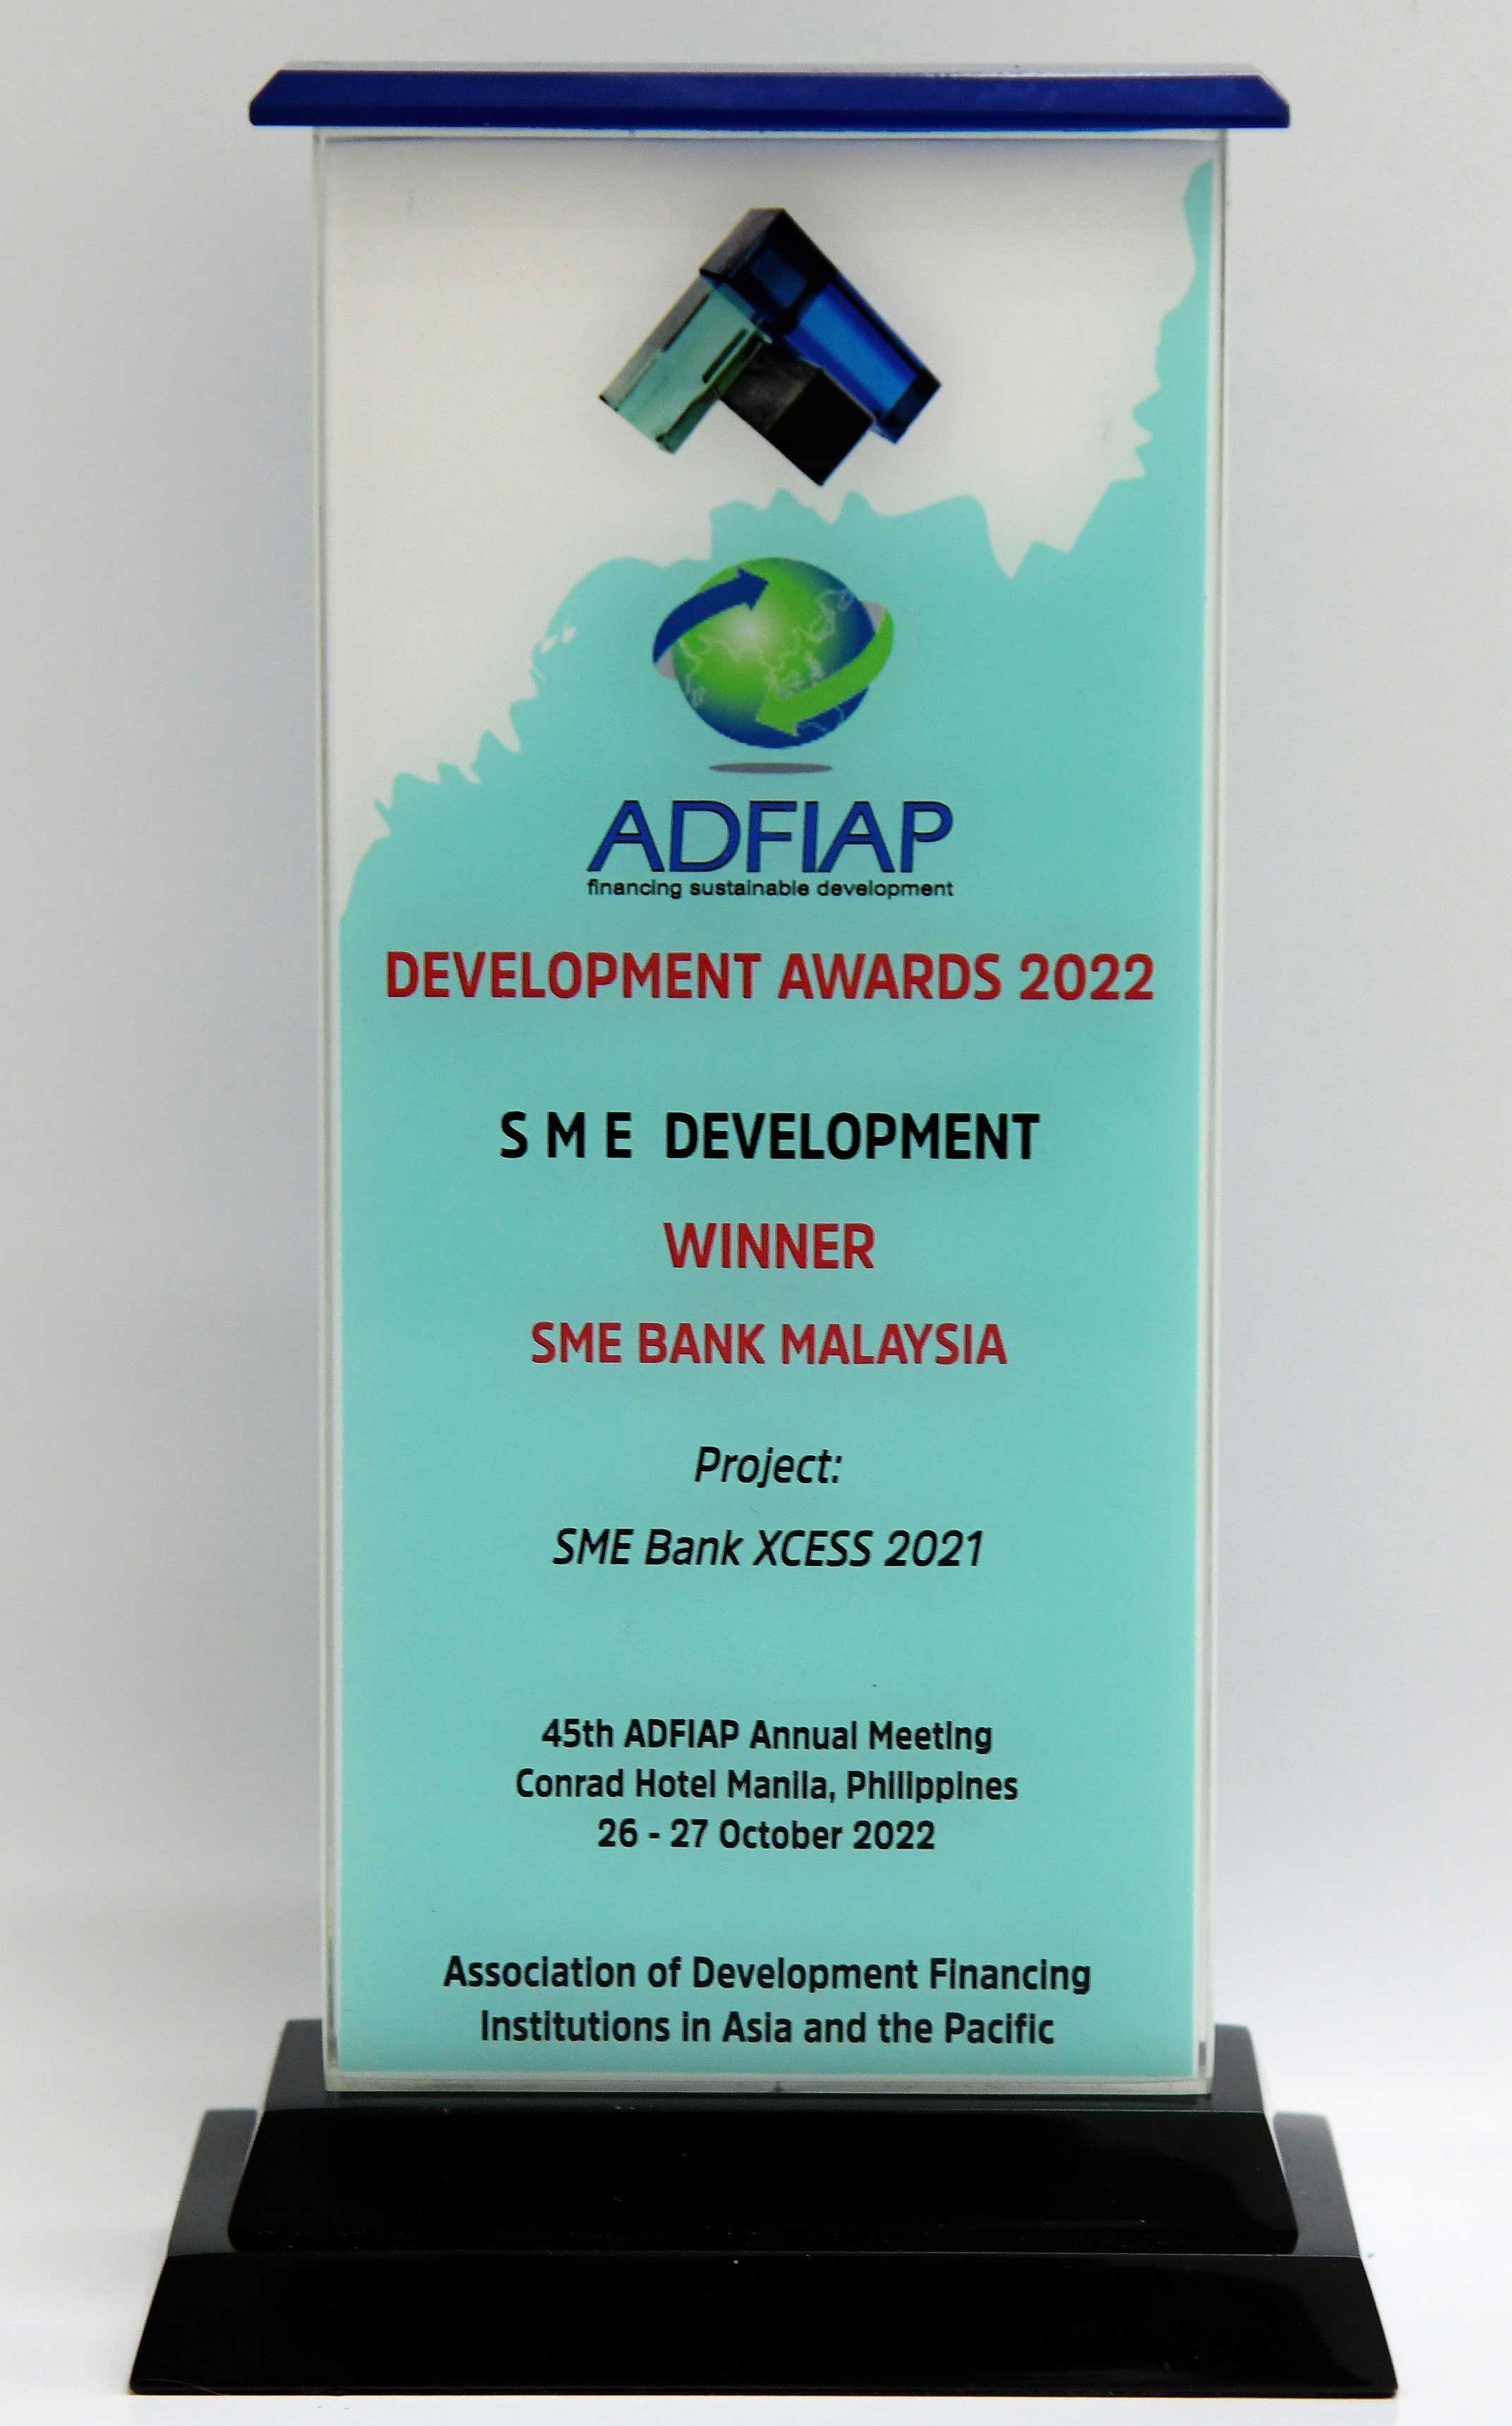 ADFIAP Awards 2022 - SME Bank Xcess 2021